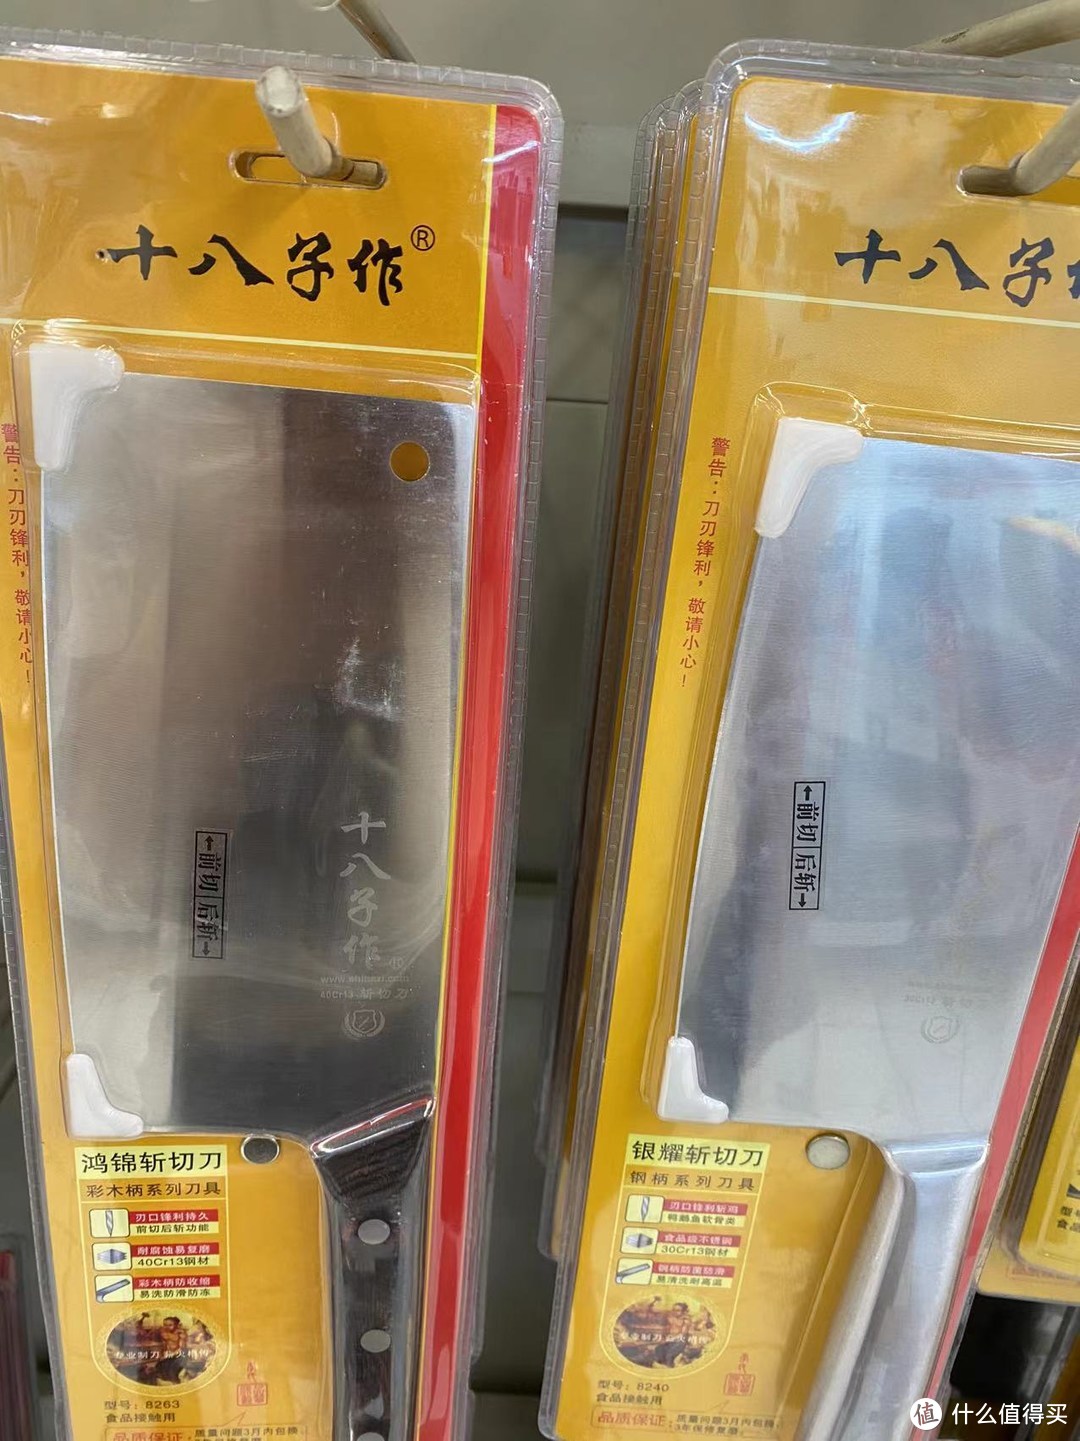 十八子作斩切刀，是一种具有传统日本风格的斩切刀。以下是一些相关的信息